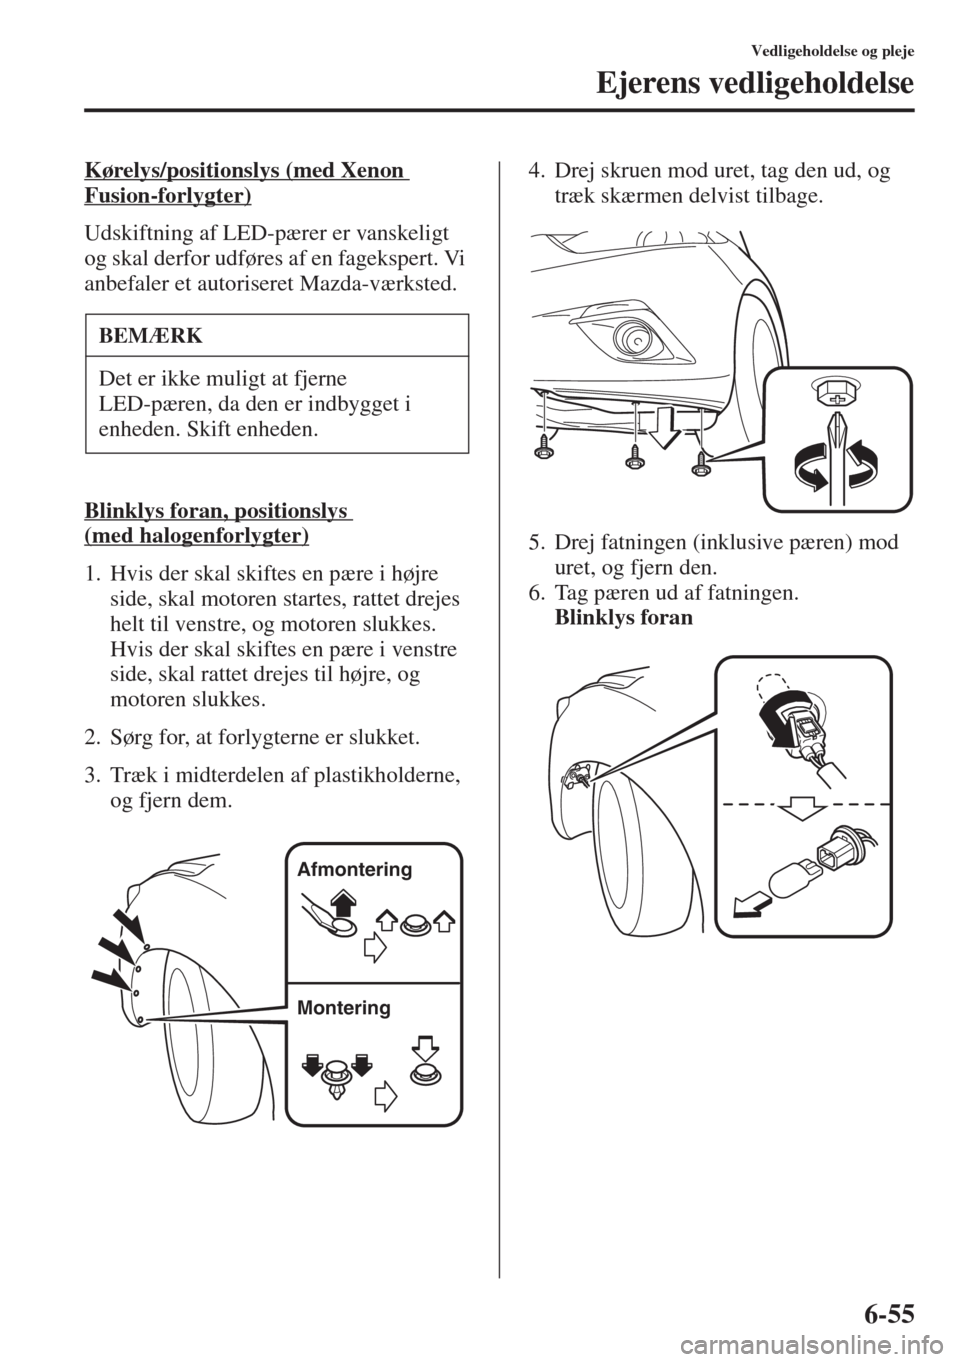 MAZDA MODEL 3 HATCHBACK 2015  Instruktionsbog (in Danish) 6-55
Vedligeholdelse og pleje
Ejerens vedligeholdelse
Kørelys/positionslys (med Xenon 
Fusion-forlygter)
Udskiftning af LED-pærer er vanskeligt 
og skal derfor udføres af en fagekspert. Vi 
anbefal